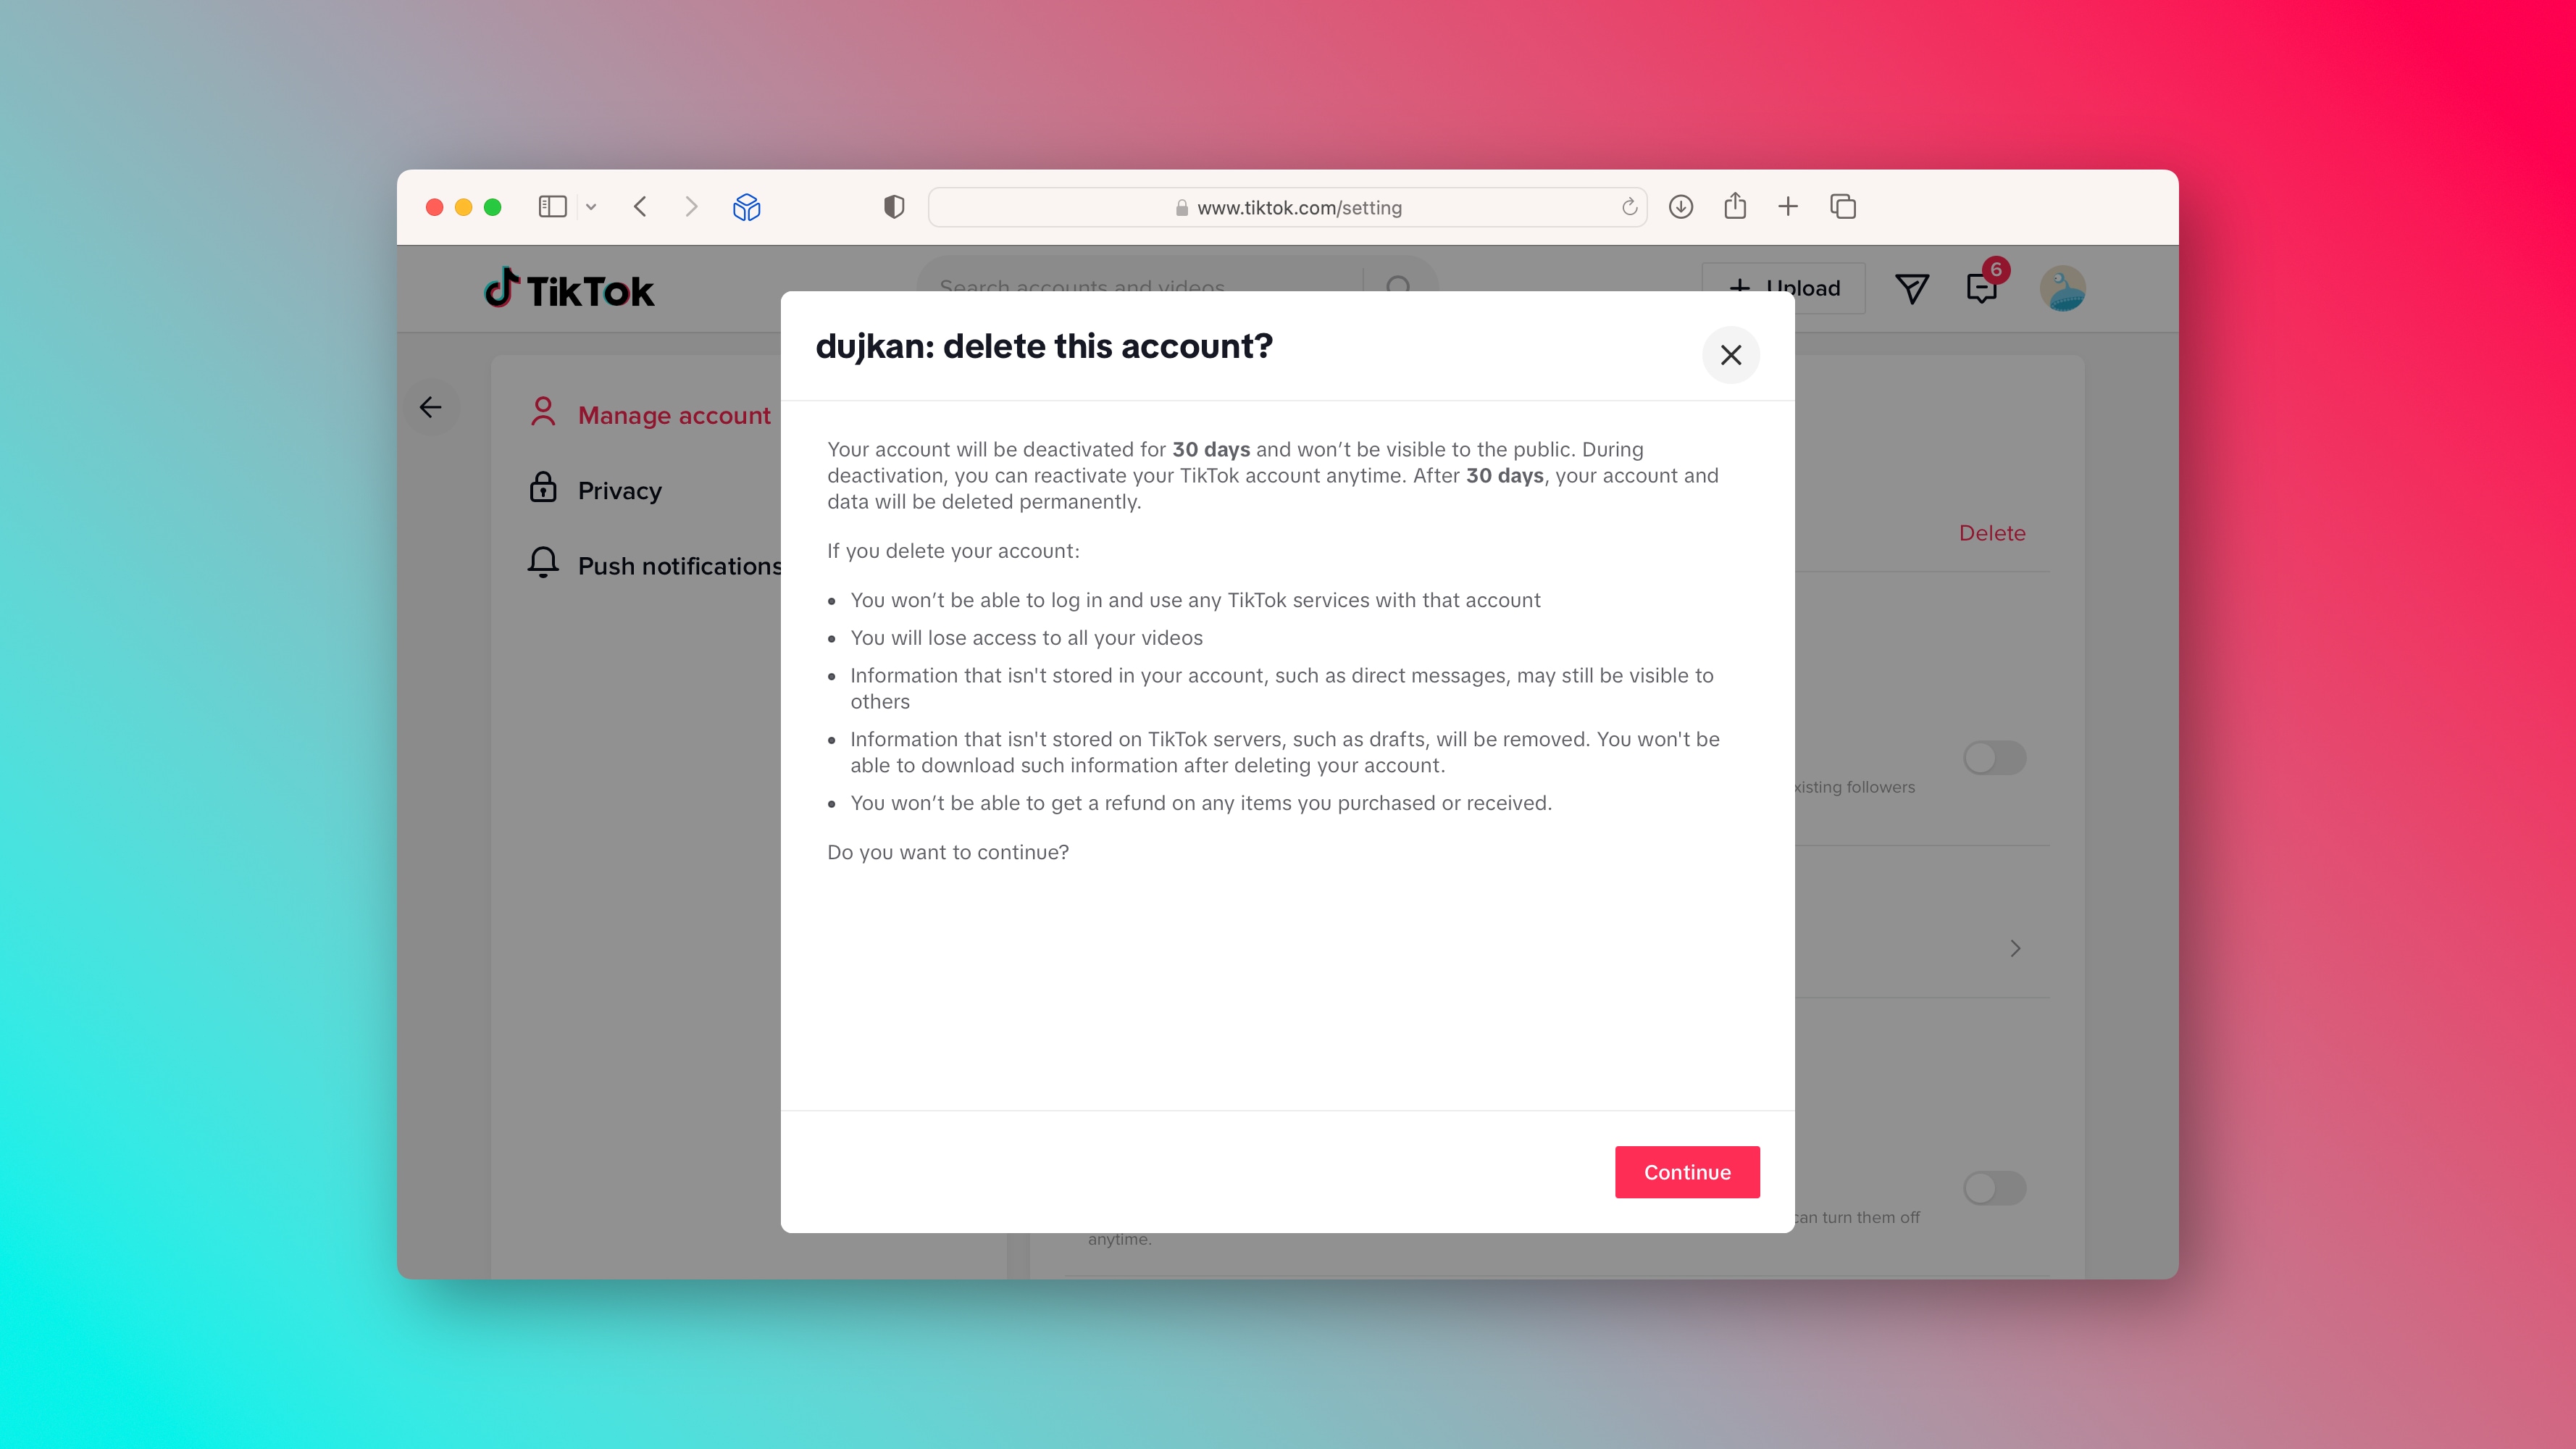 Une invite dans l'interface Web de TikTok demandant à l'utilisateur de confirmer la suppression du compte